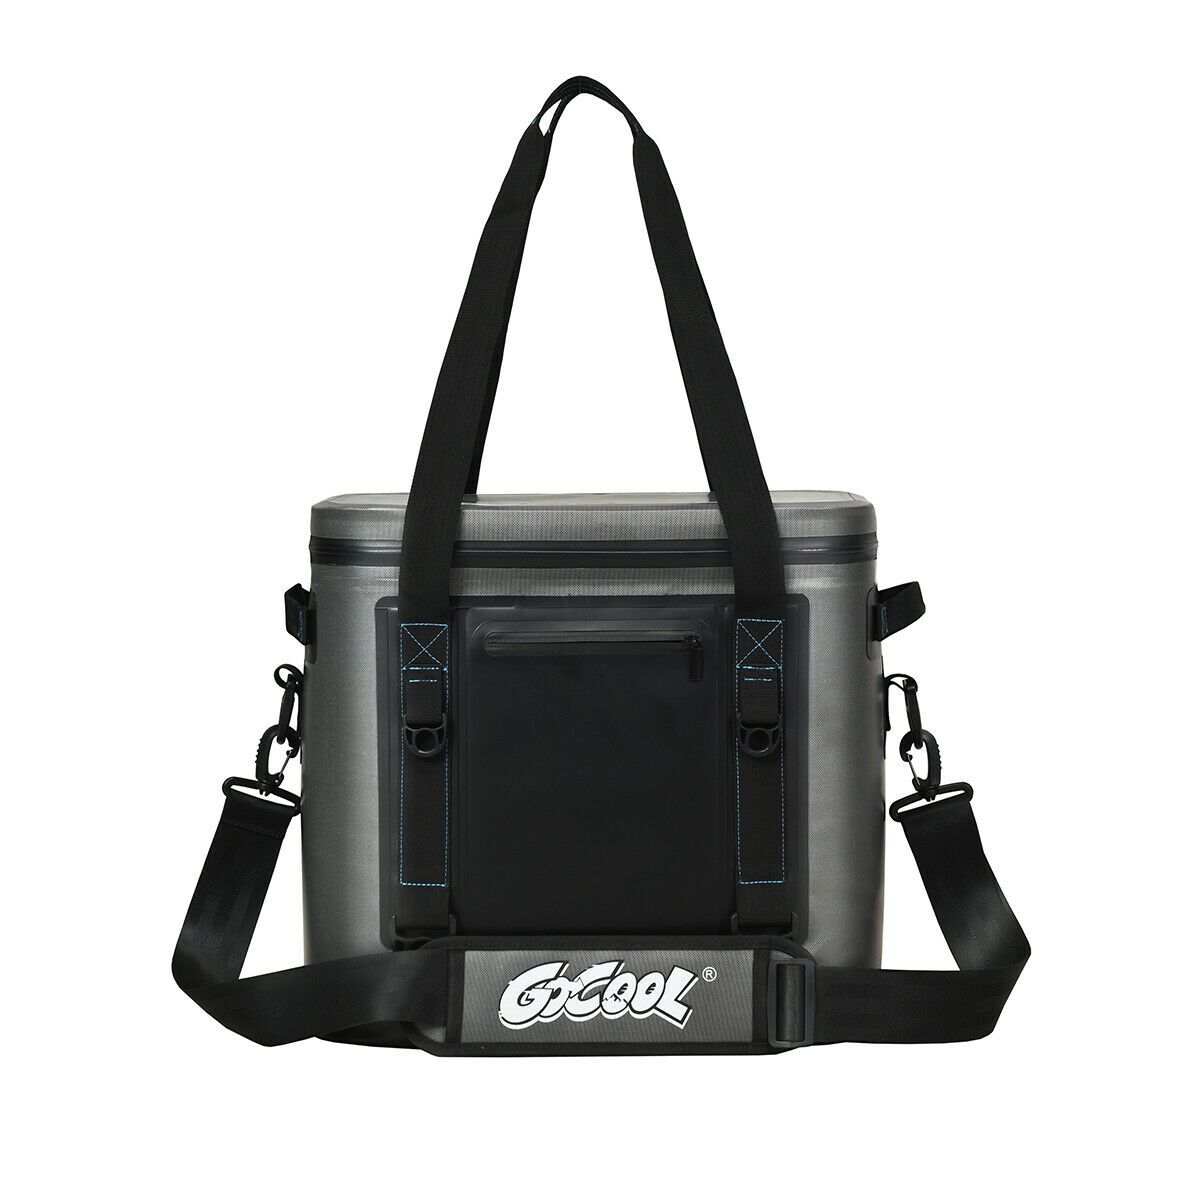 Save on Igloo Cooler Bag Black & White Order Online Delivery